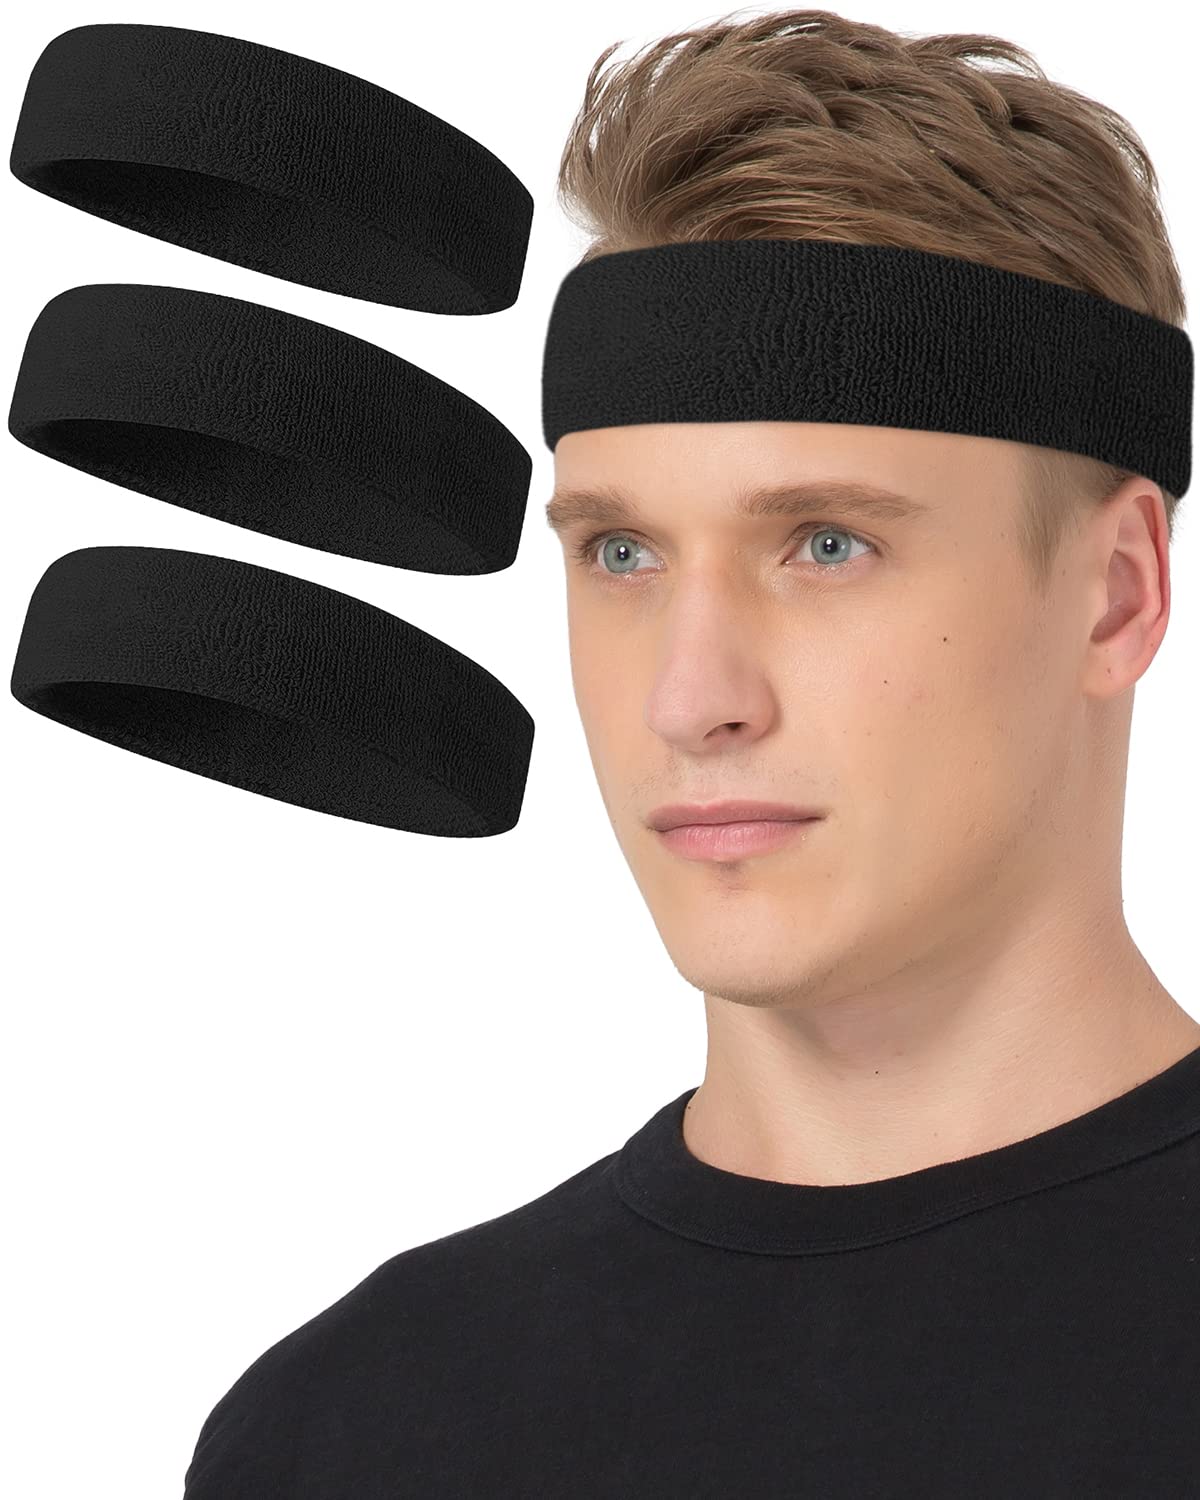 Basketball Headbands & Wristbands